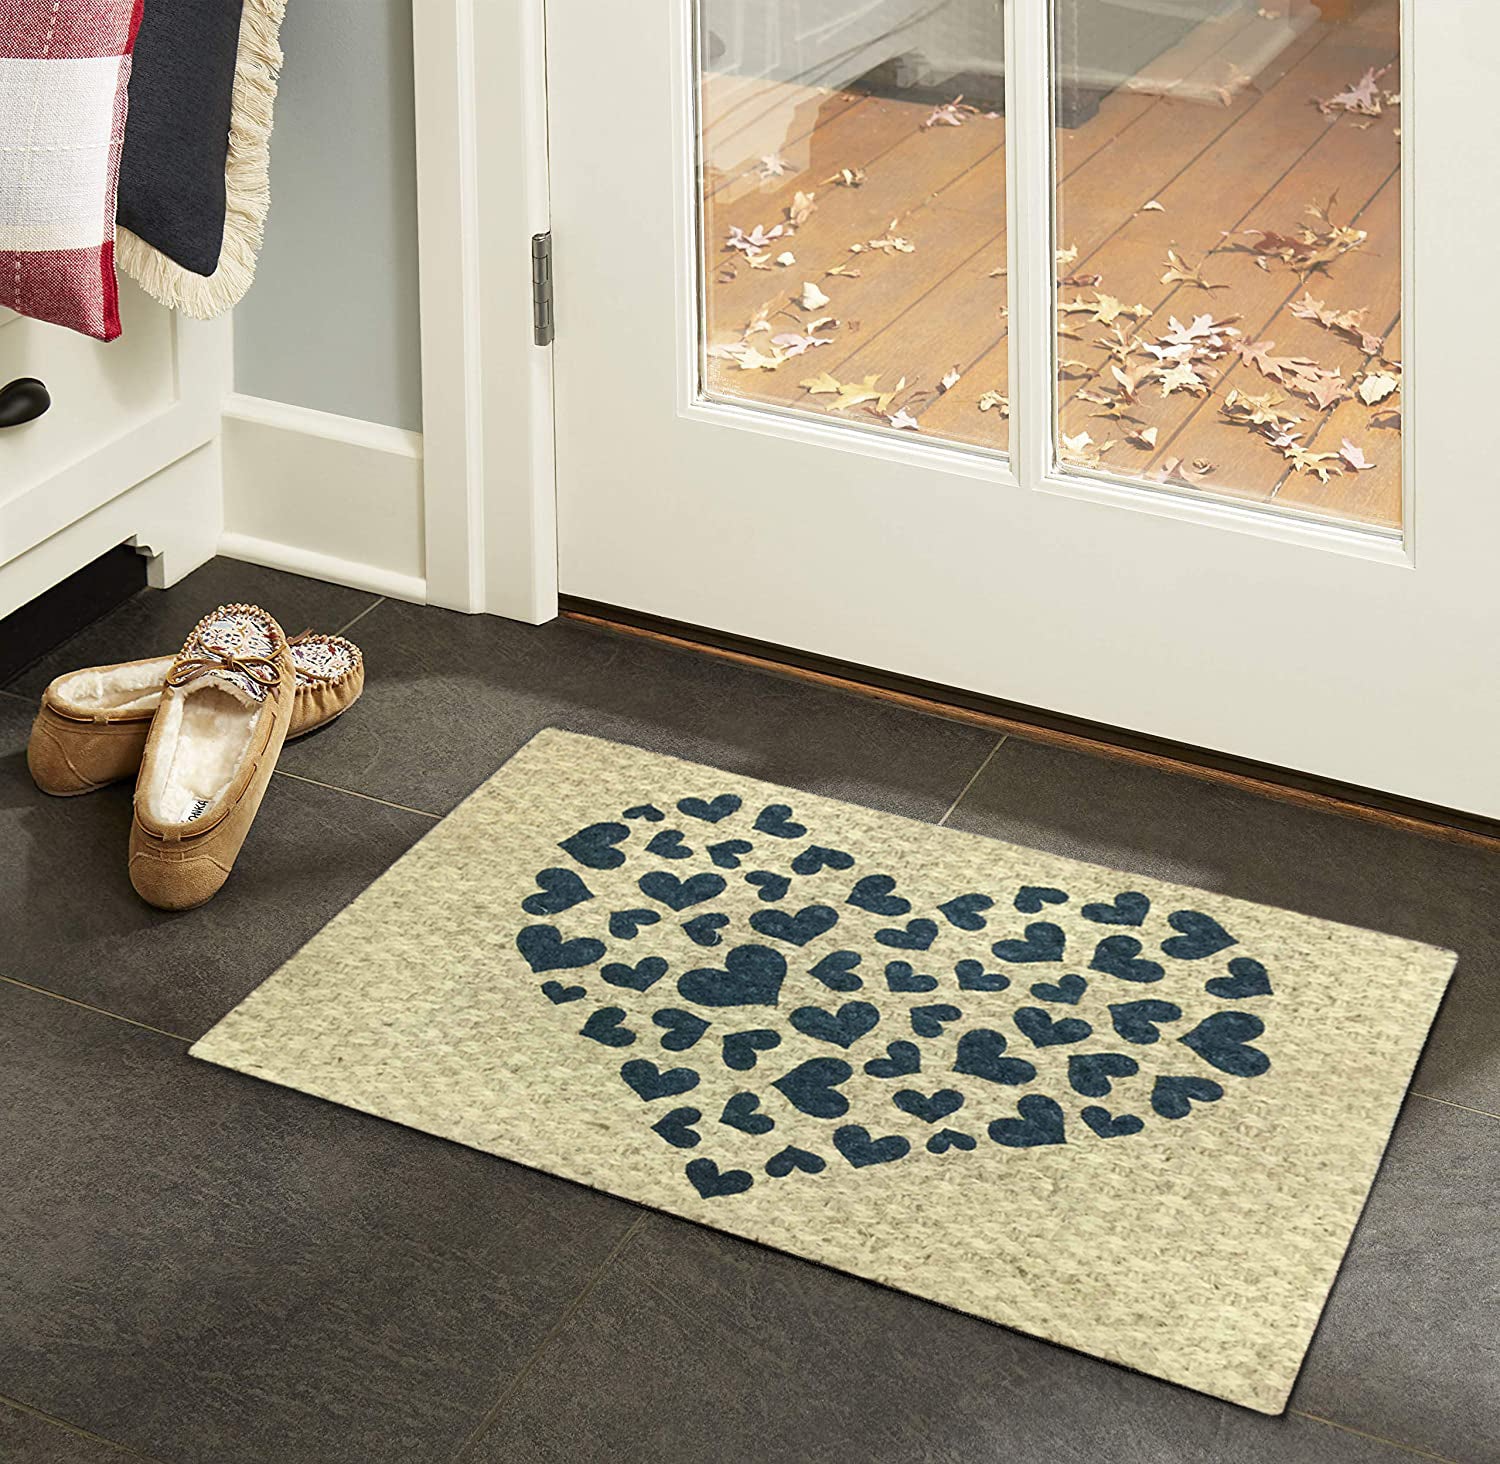 Hearts Outdoor Coir Doormat 18" x 30"